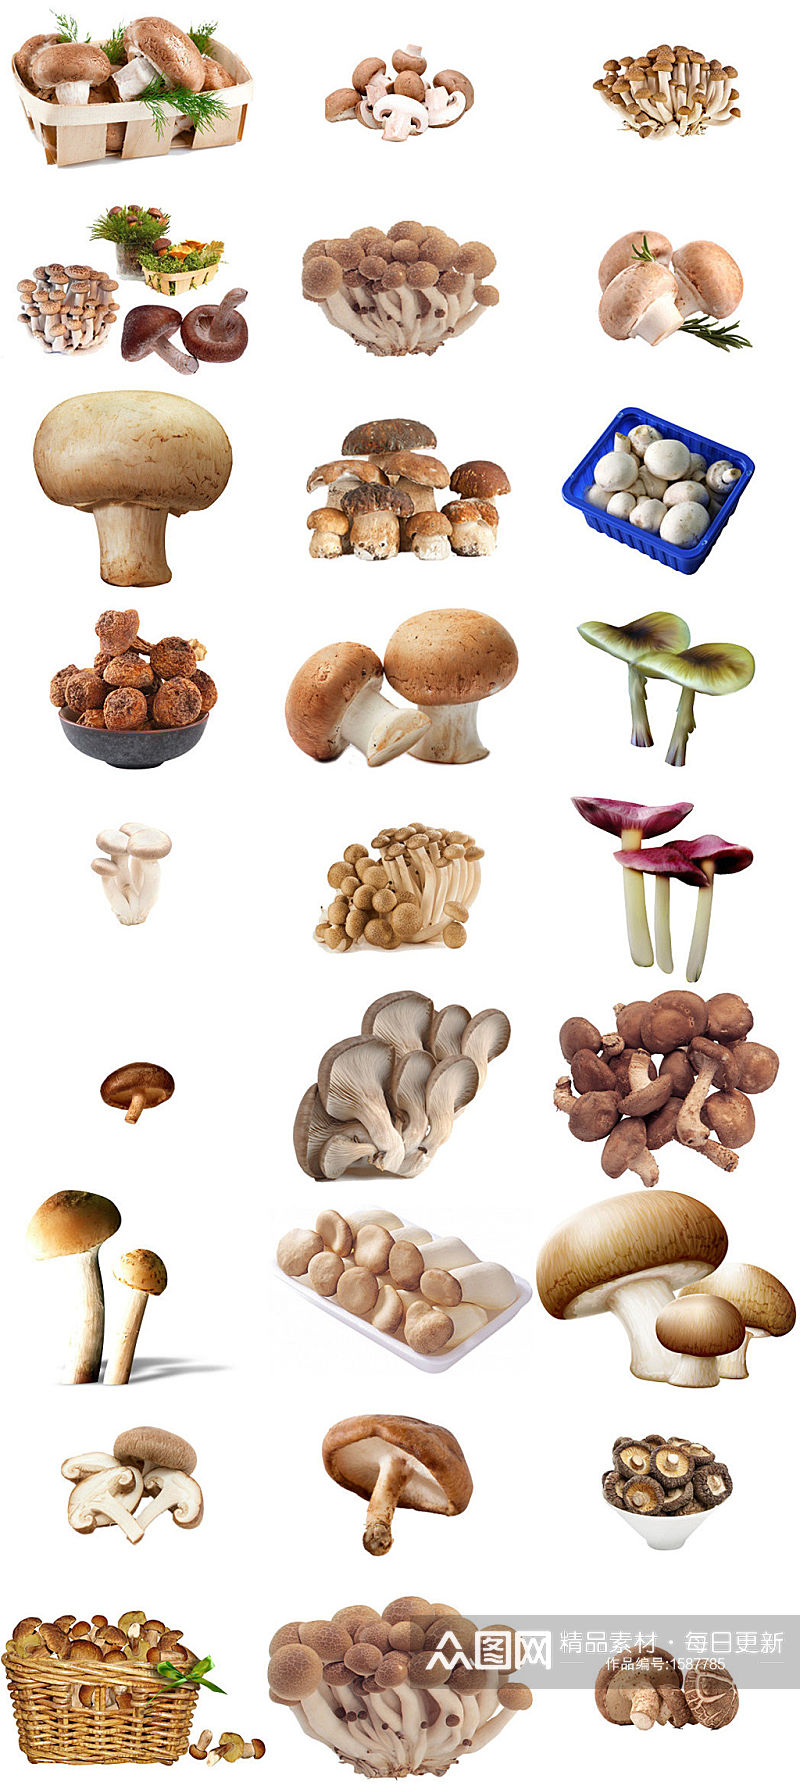 美食蘑菇香菇海报设计素材汇集素材